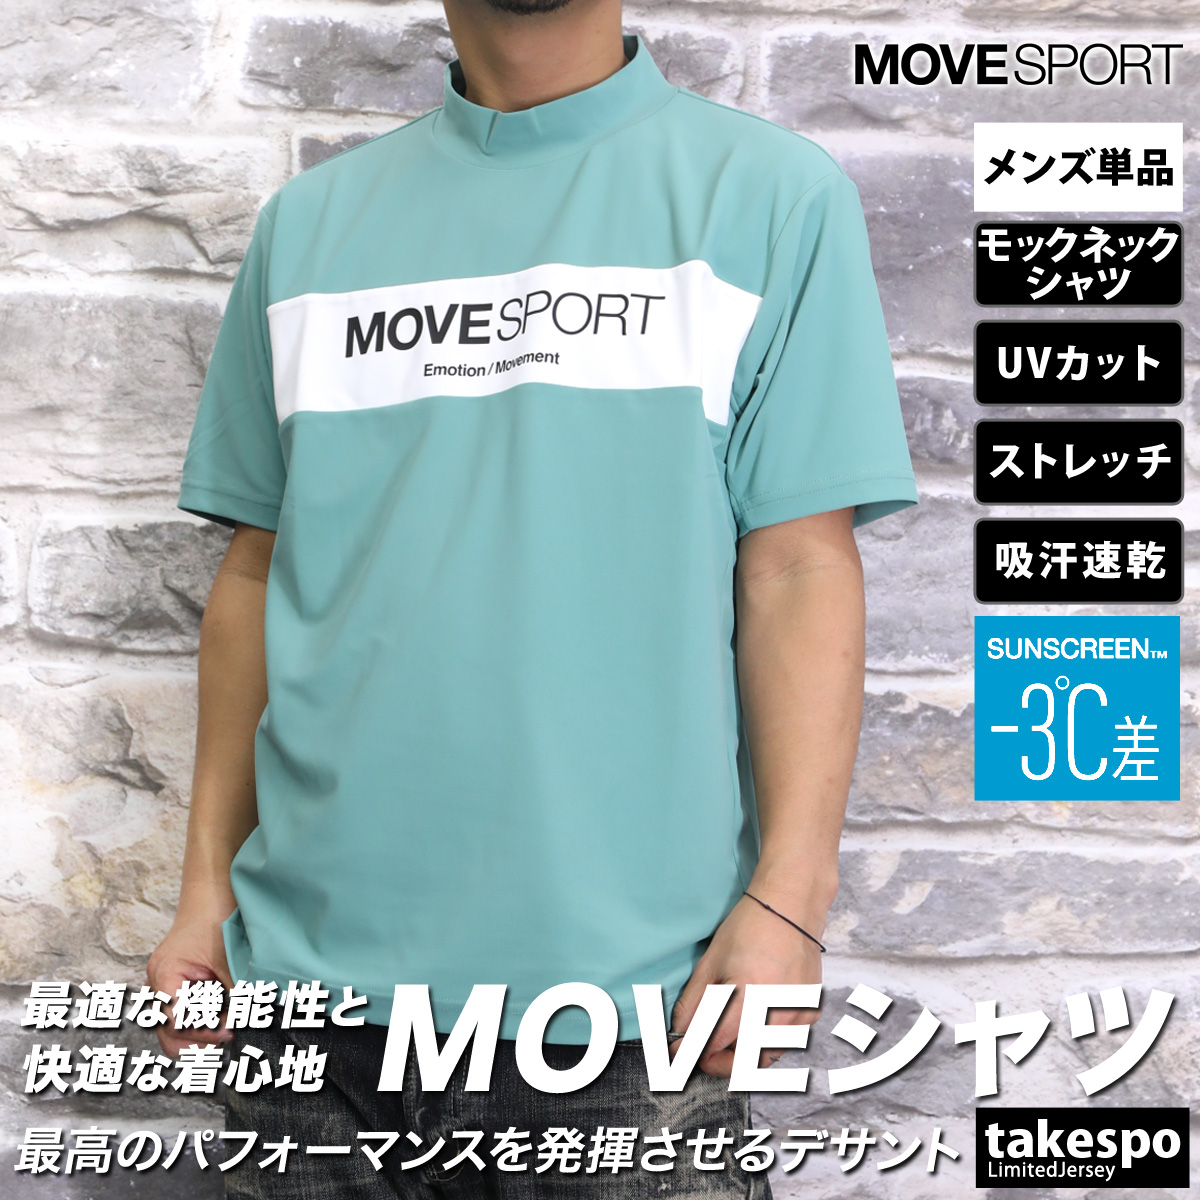 ムーブスポーツ Tシャツ メンズ 上 MOVESPORT DESCENTE サンスクリーン ストレッ...